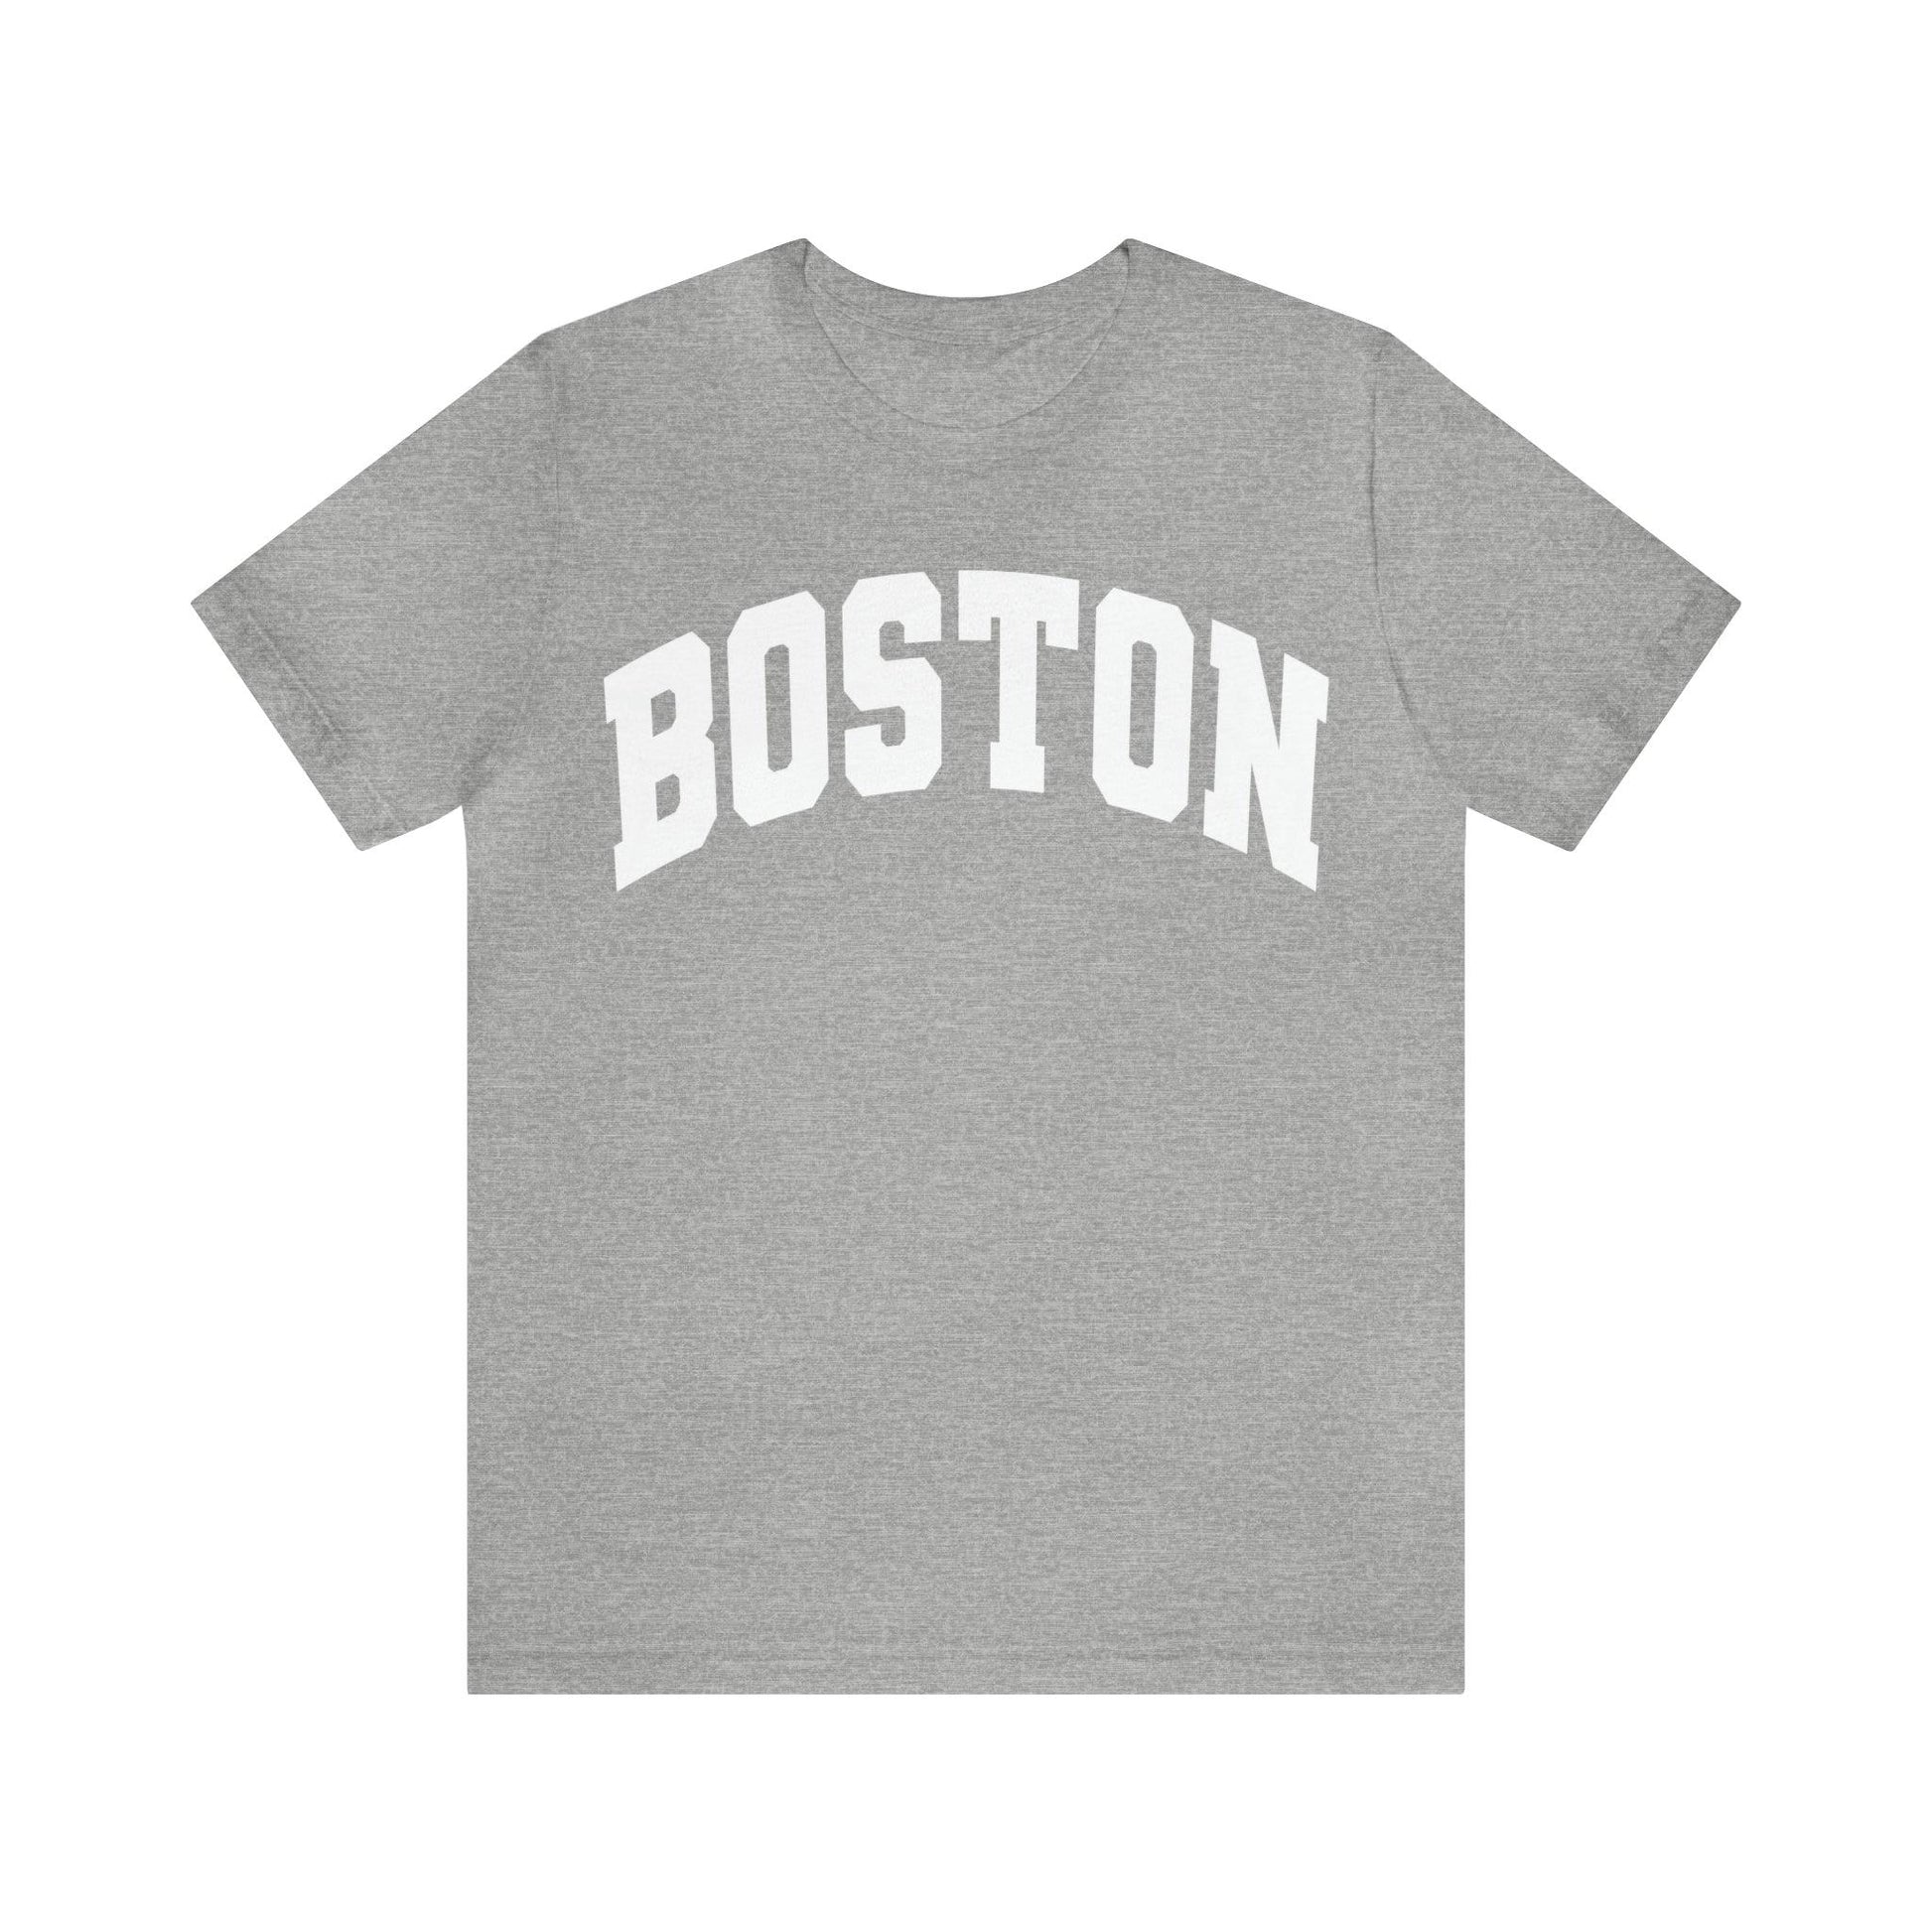 Boston Massachusetts Shirt, Boston Souvenir, Boston shirt, Boston Tshirt, Boston Vacation shirt - Giftsmojo